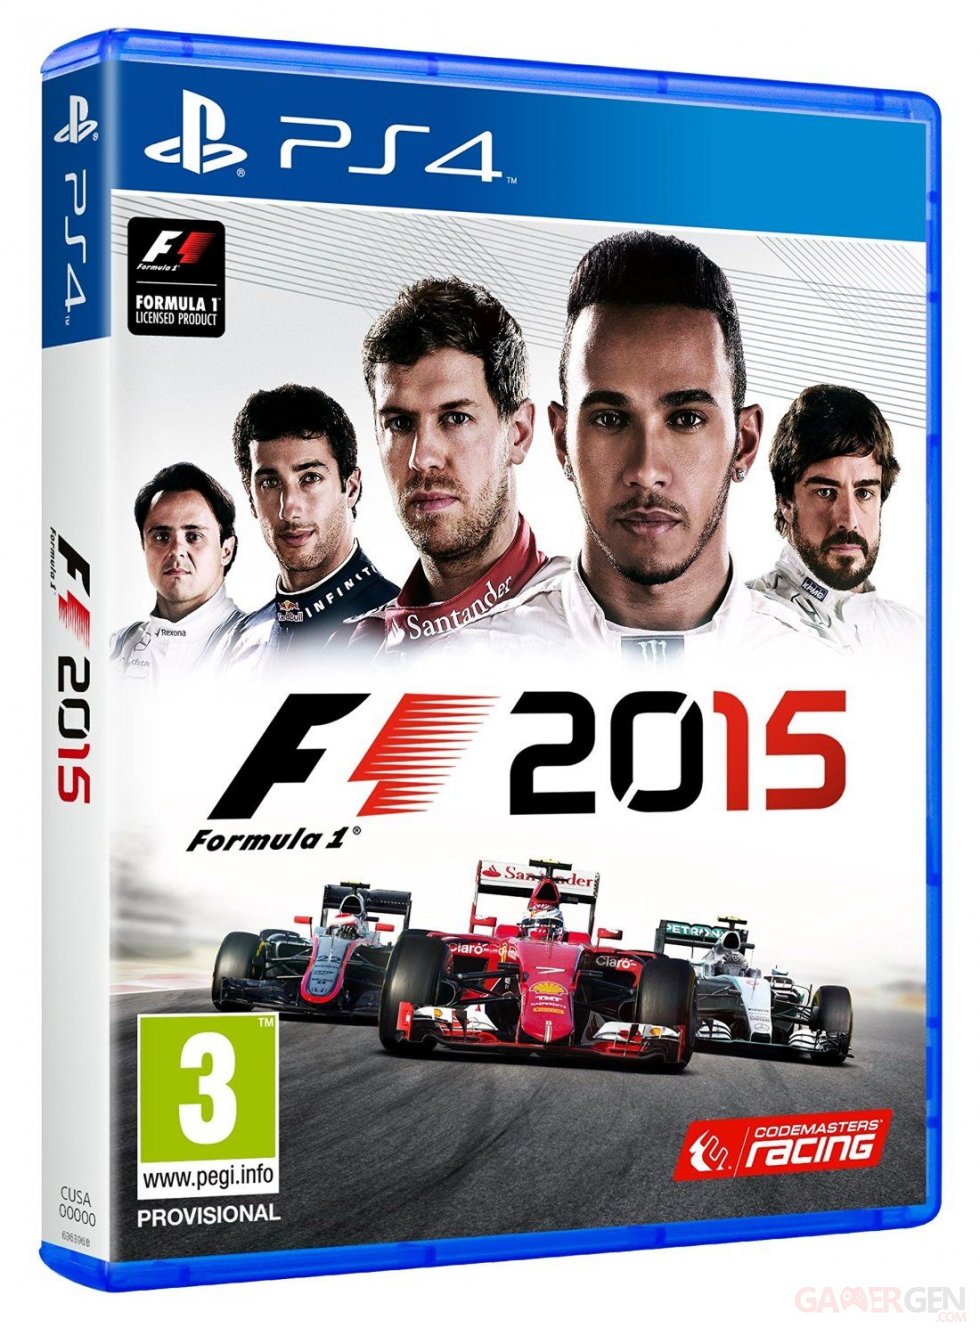 f1 2015 formula 1